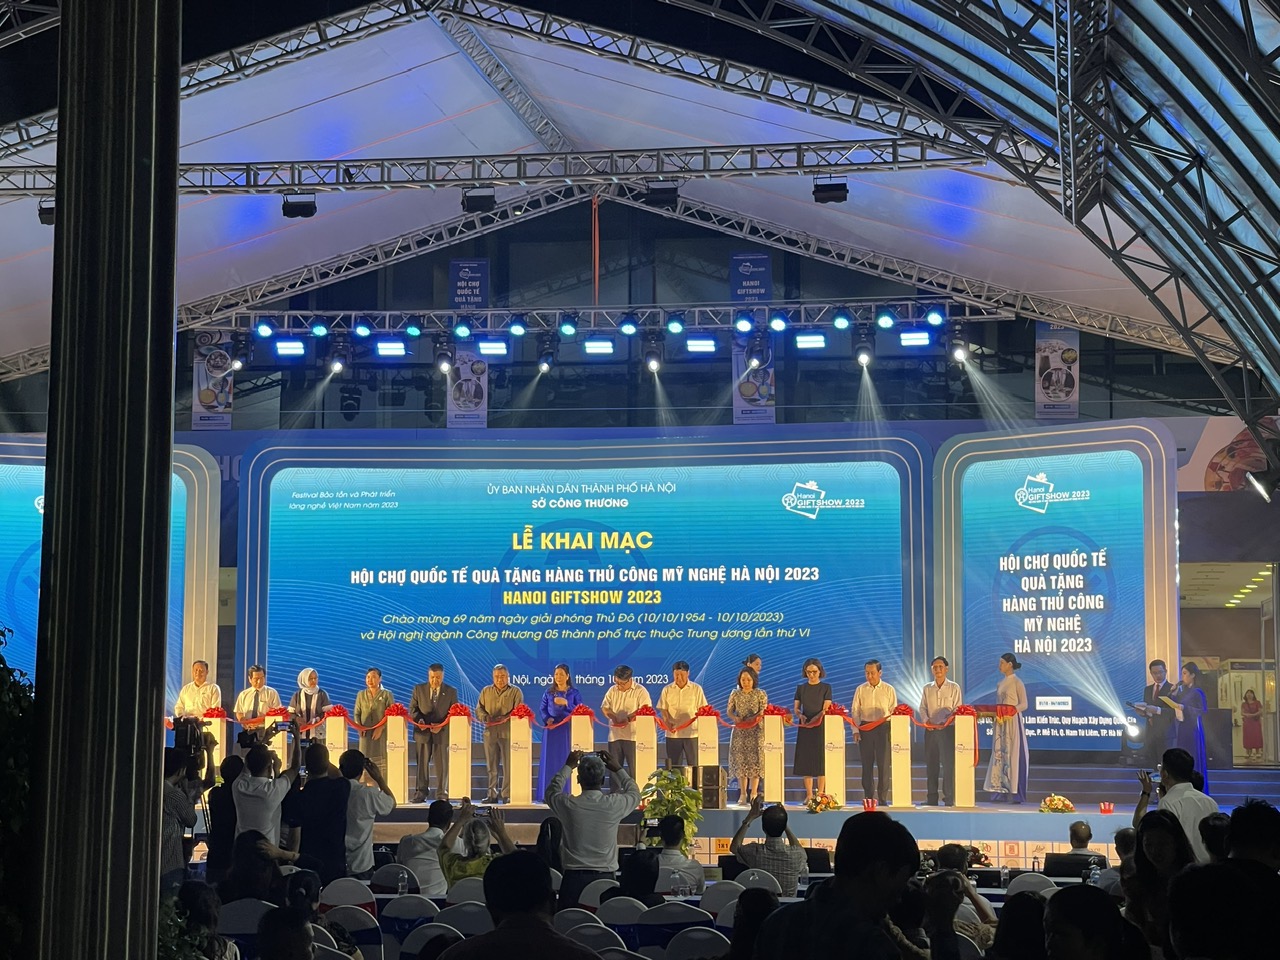 Trung tâm Khuyến công Xúc tiến thương mại và Phát triển CCN tham dự  khai mạc Hội chợ Quốc tế quà tặng hàng thủ công mỹ nghệ Hà Nội 2023